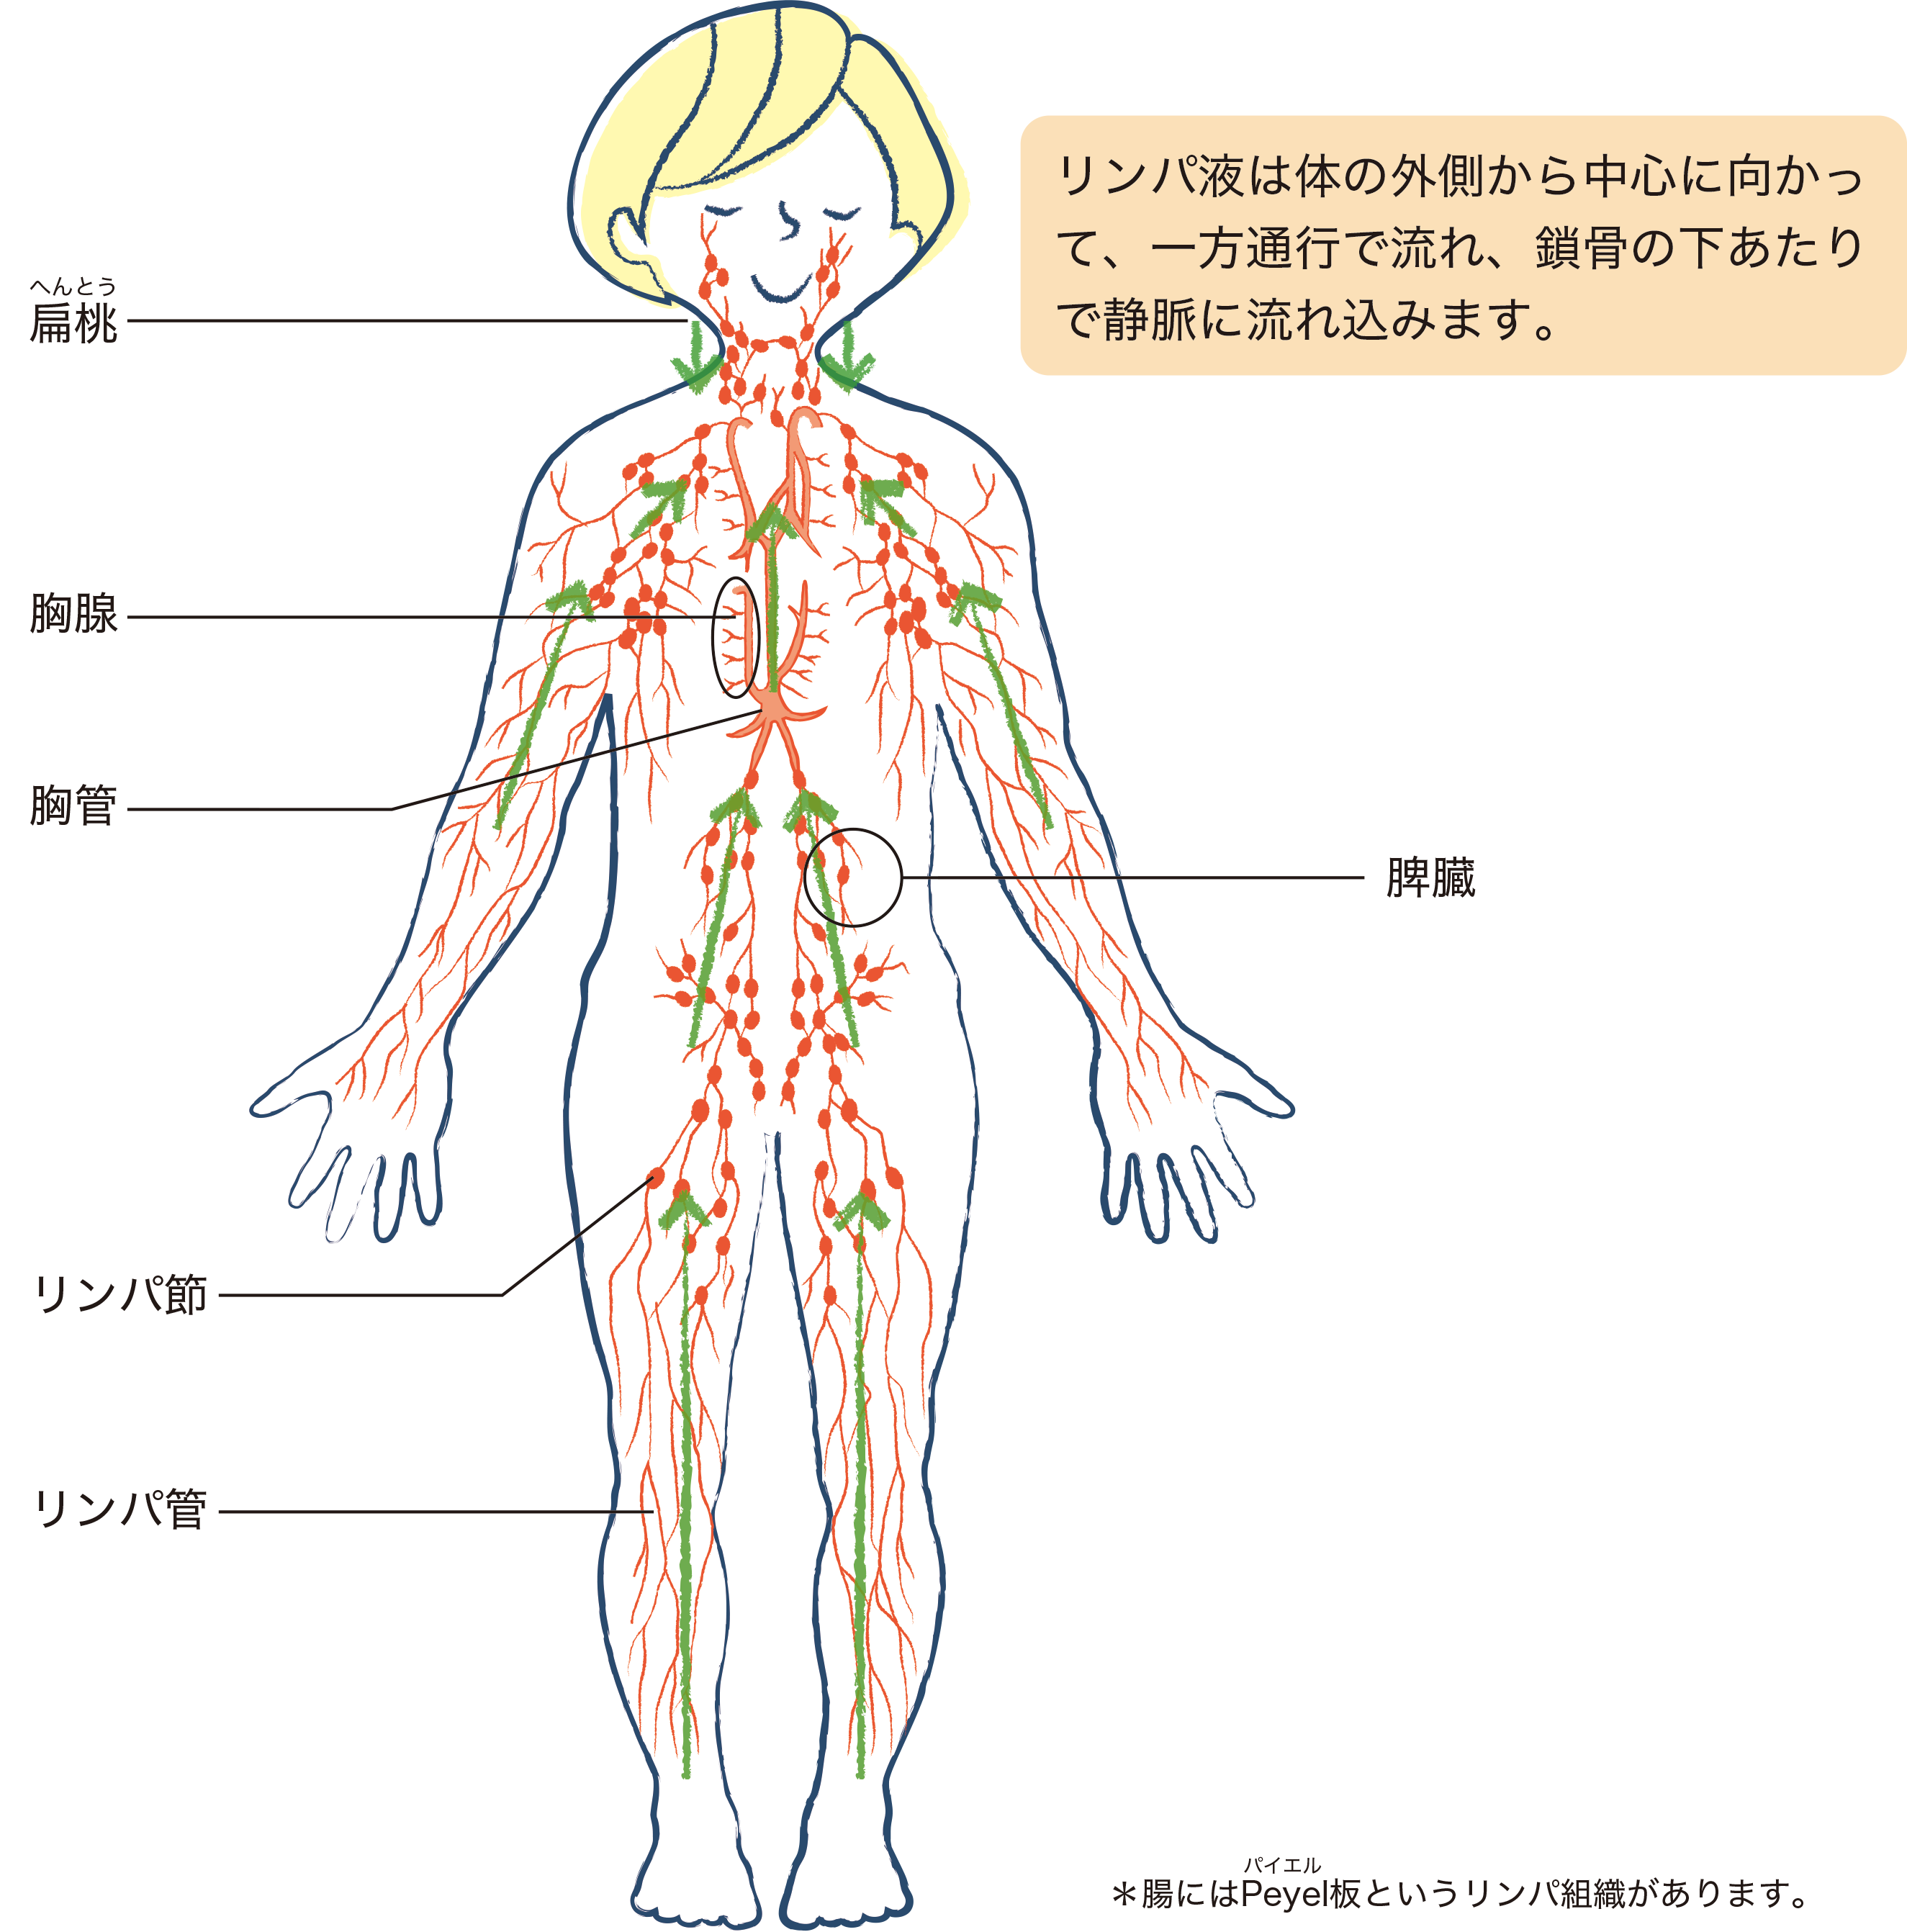 リンパ組織のイメージ図。リンパ液は体の外側から中心に向かって、一方通行で流れ、鎖骨の下あたりで静脈に流れ込みます。